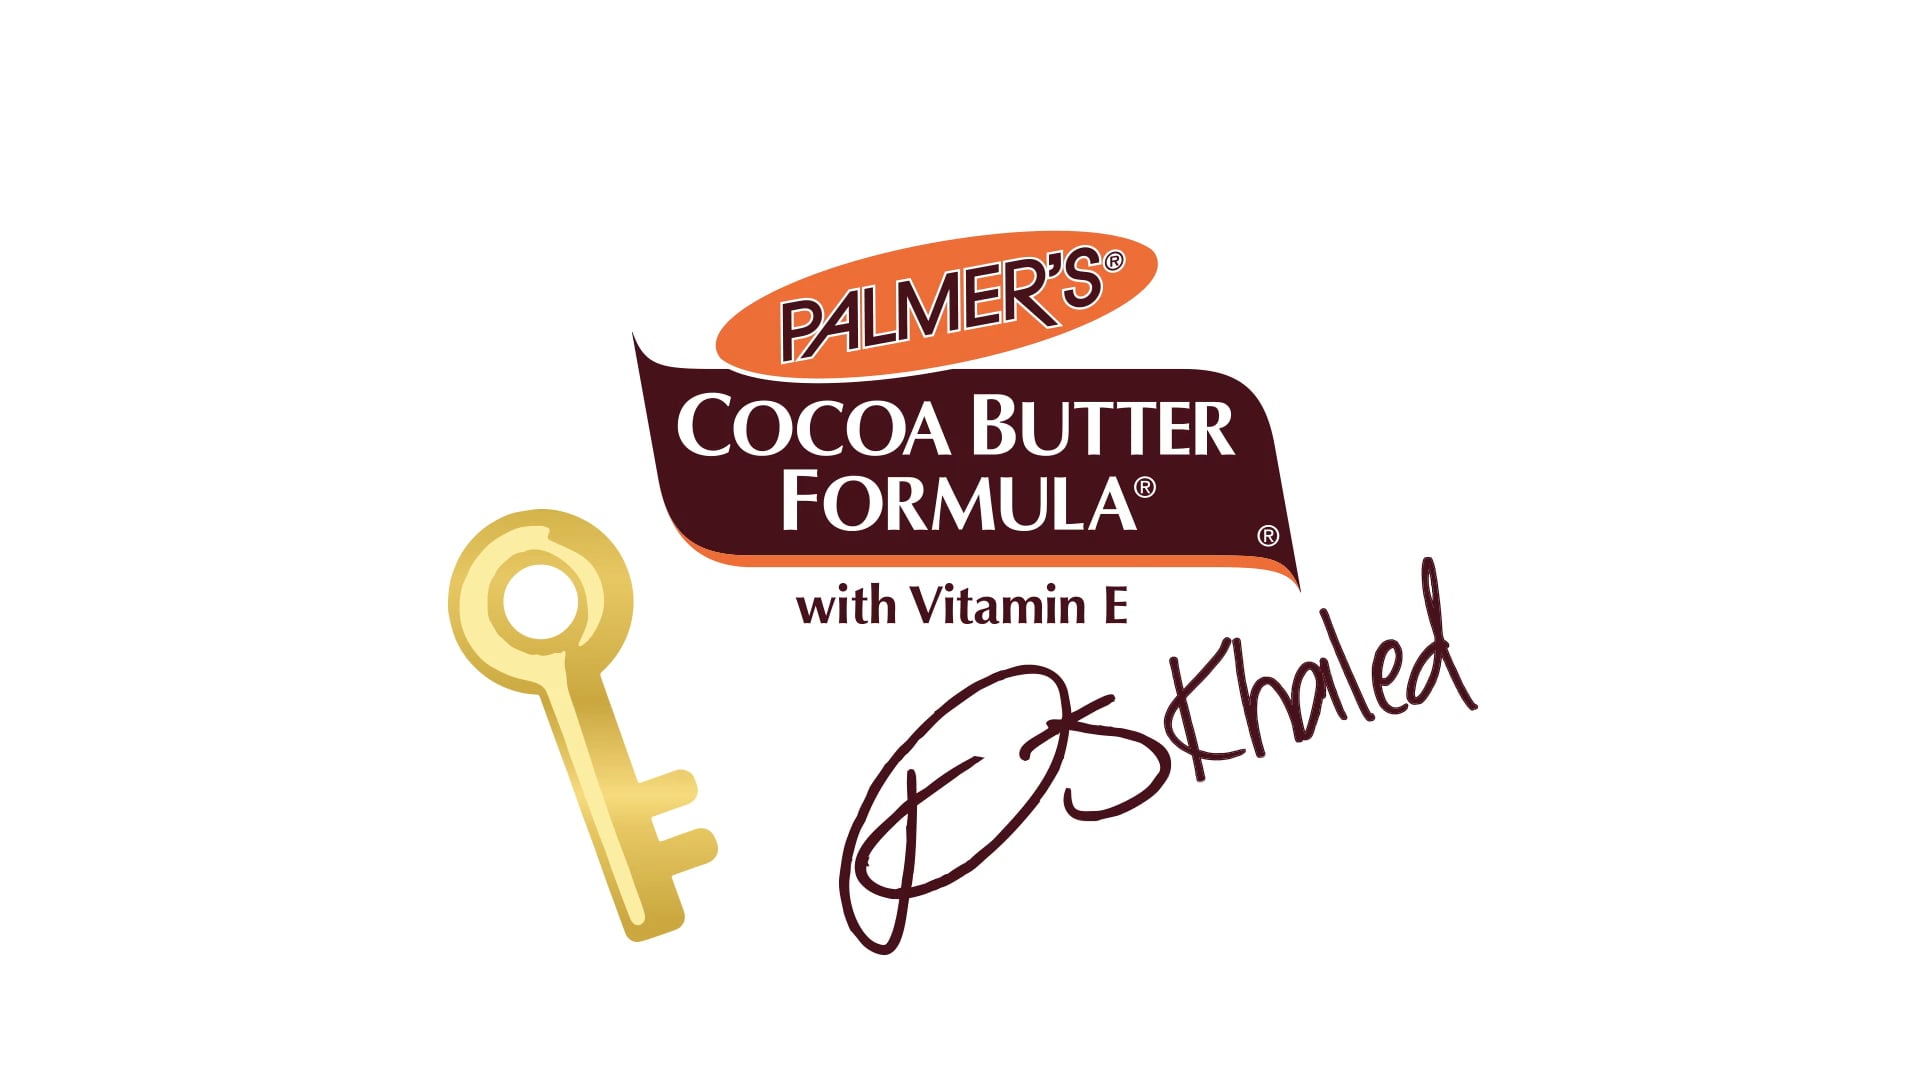 Palmer's Cocoa Butter Testimonials featuring DJ Khaled